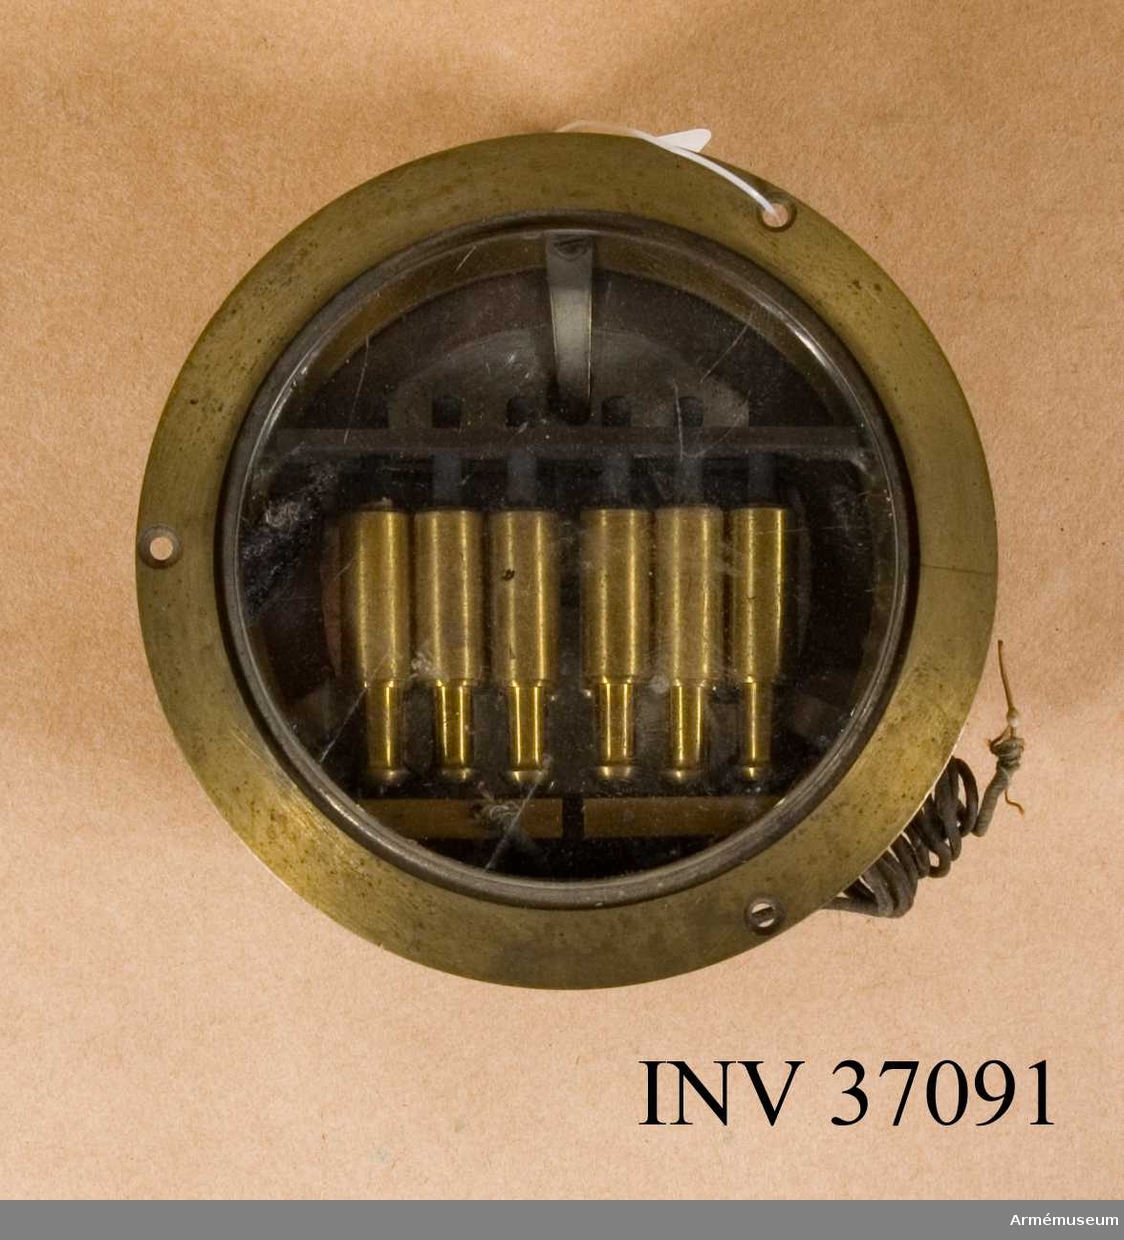 Grupp H I.

Av kolstavstyp och den äldsta av L M Ericssons många mikrofontyper. 
Den ingick bl.a. i telefonapparat m/1887; jfr AM 37045. 
Detta exemplar har troligen tjänat som undervisningsmateriel.